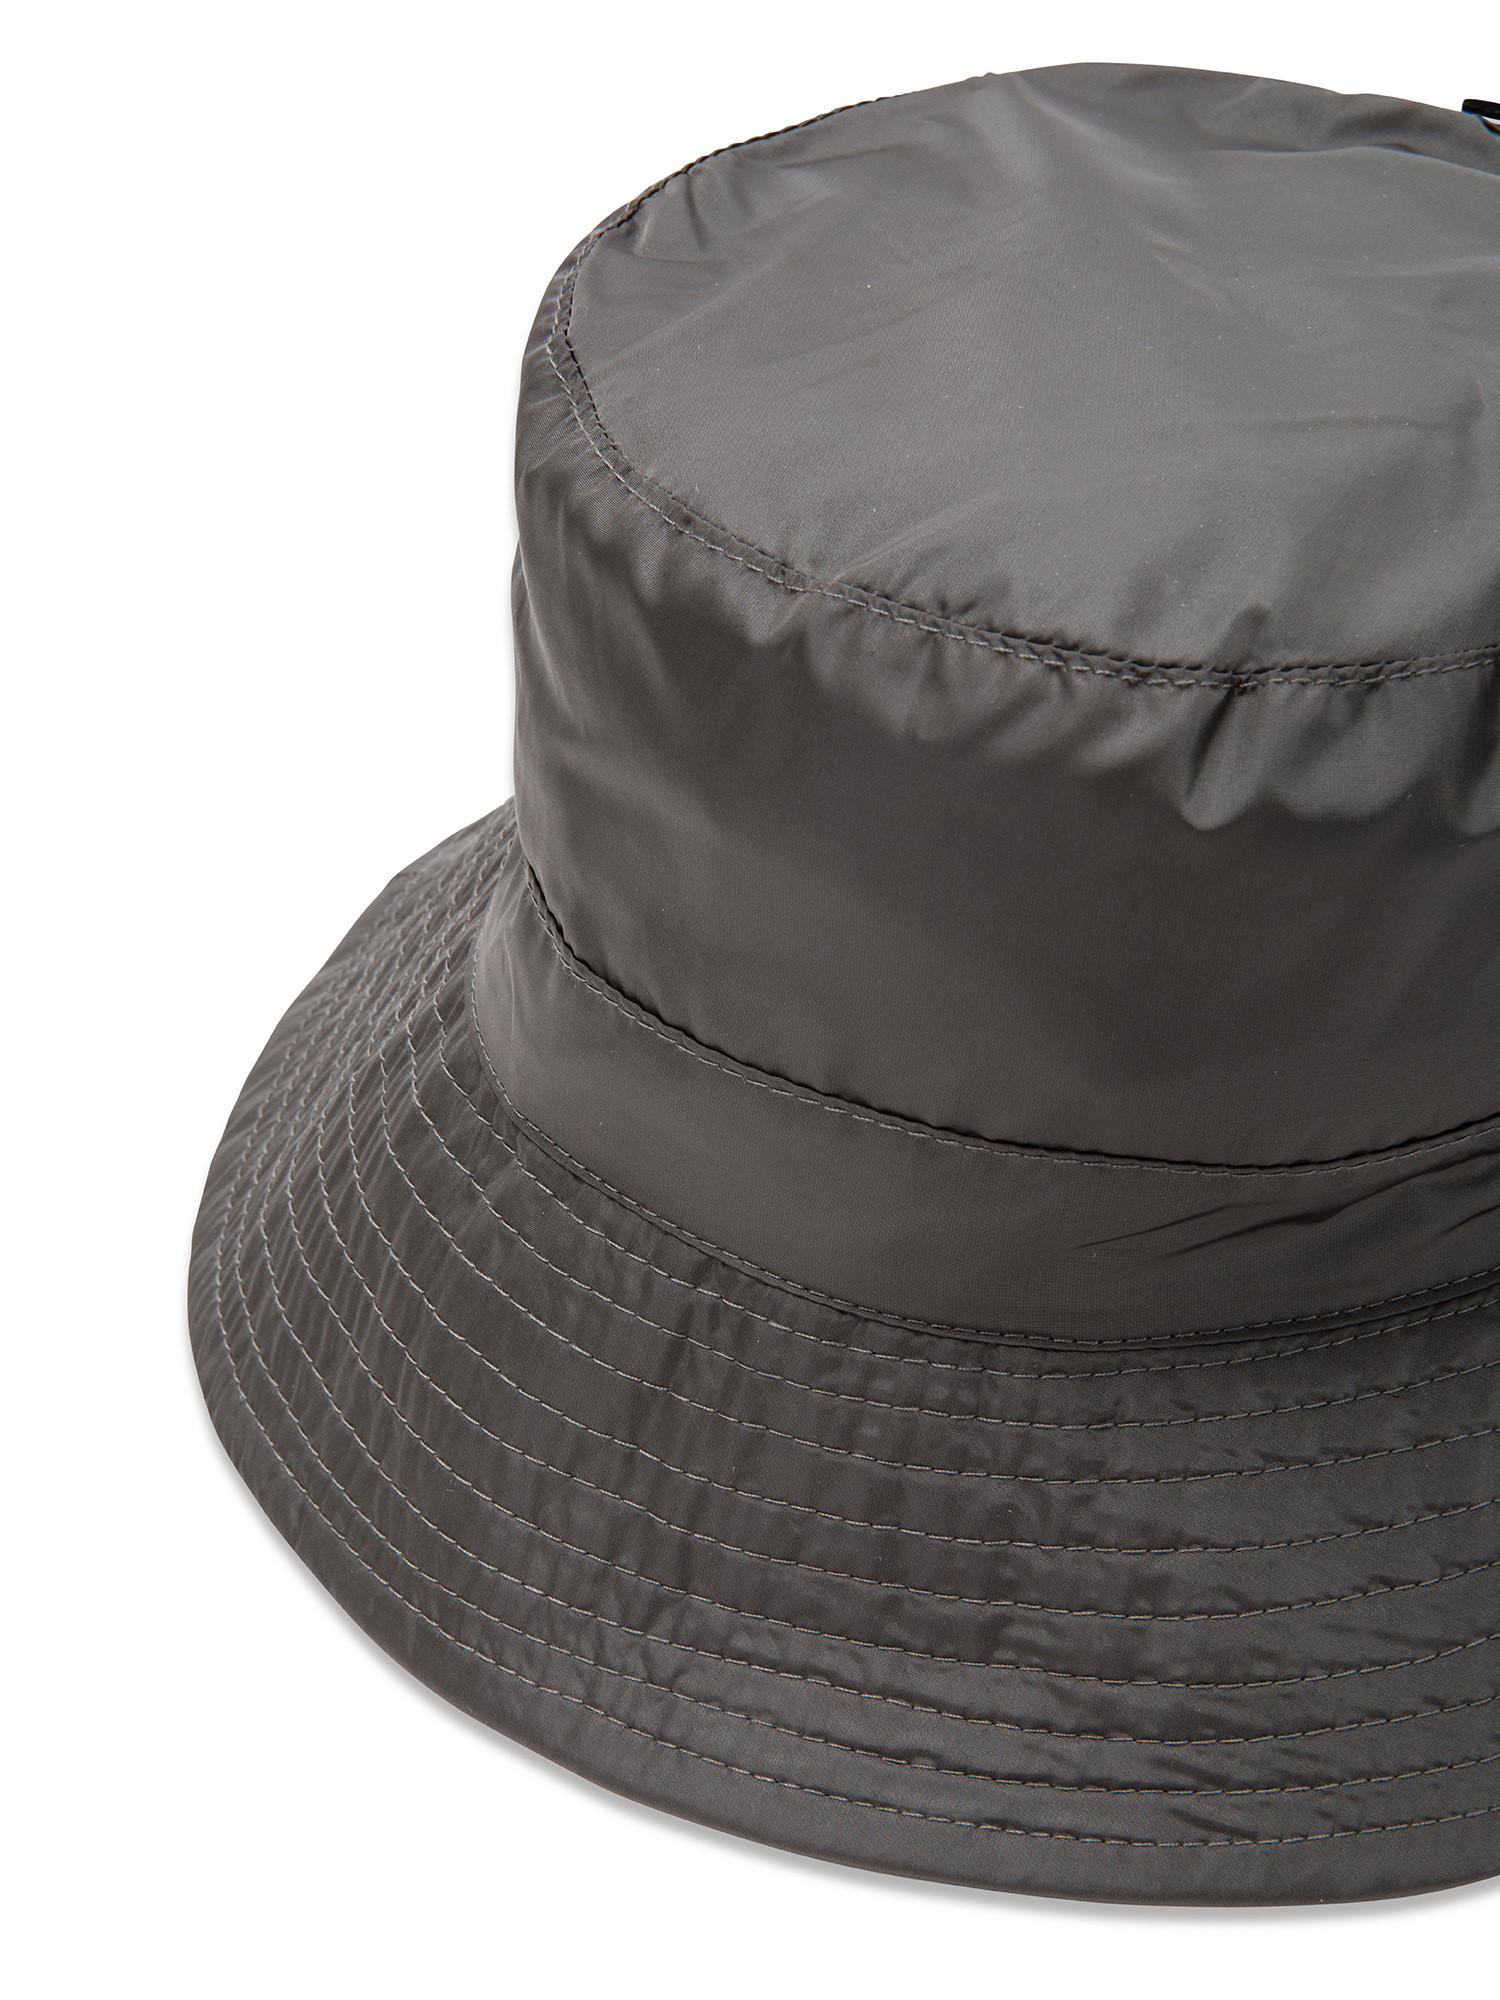 Koan - Nylon hat, Dark Grey, large image number 1